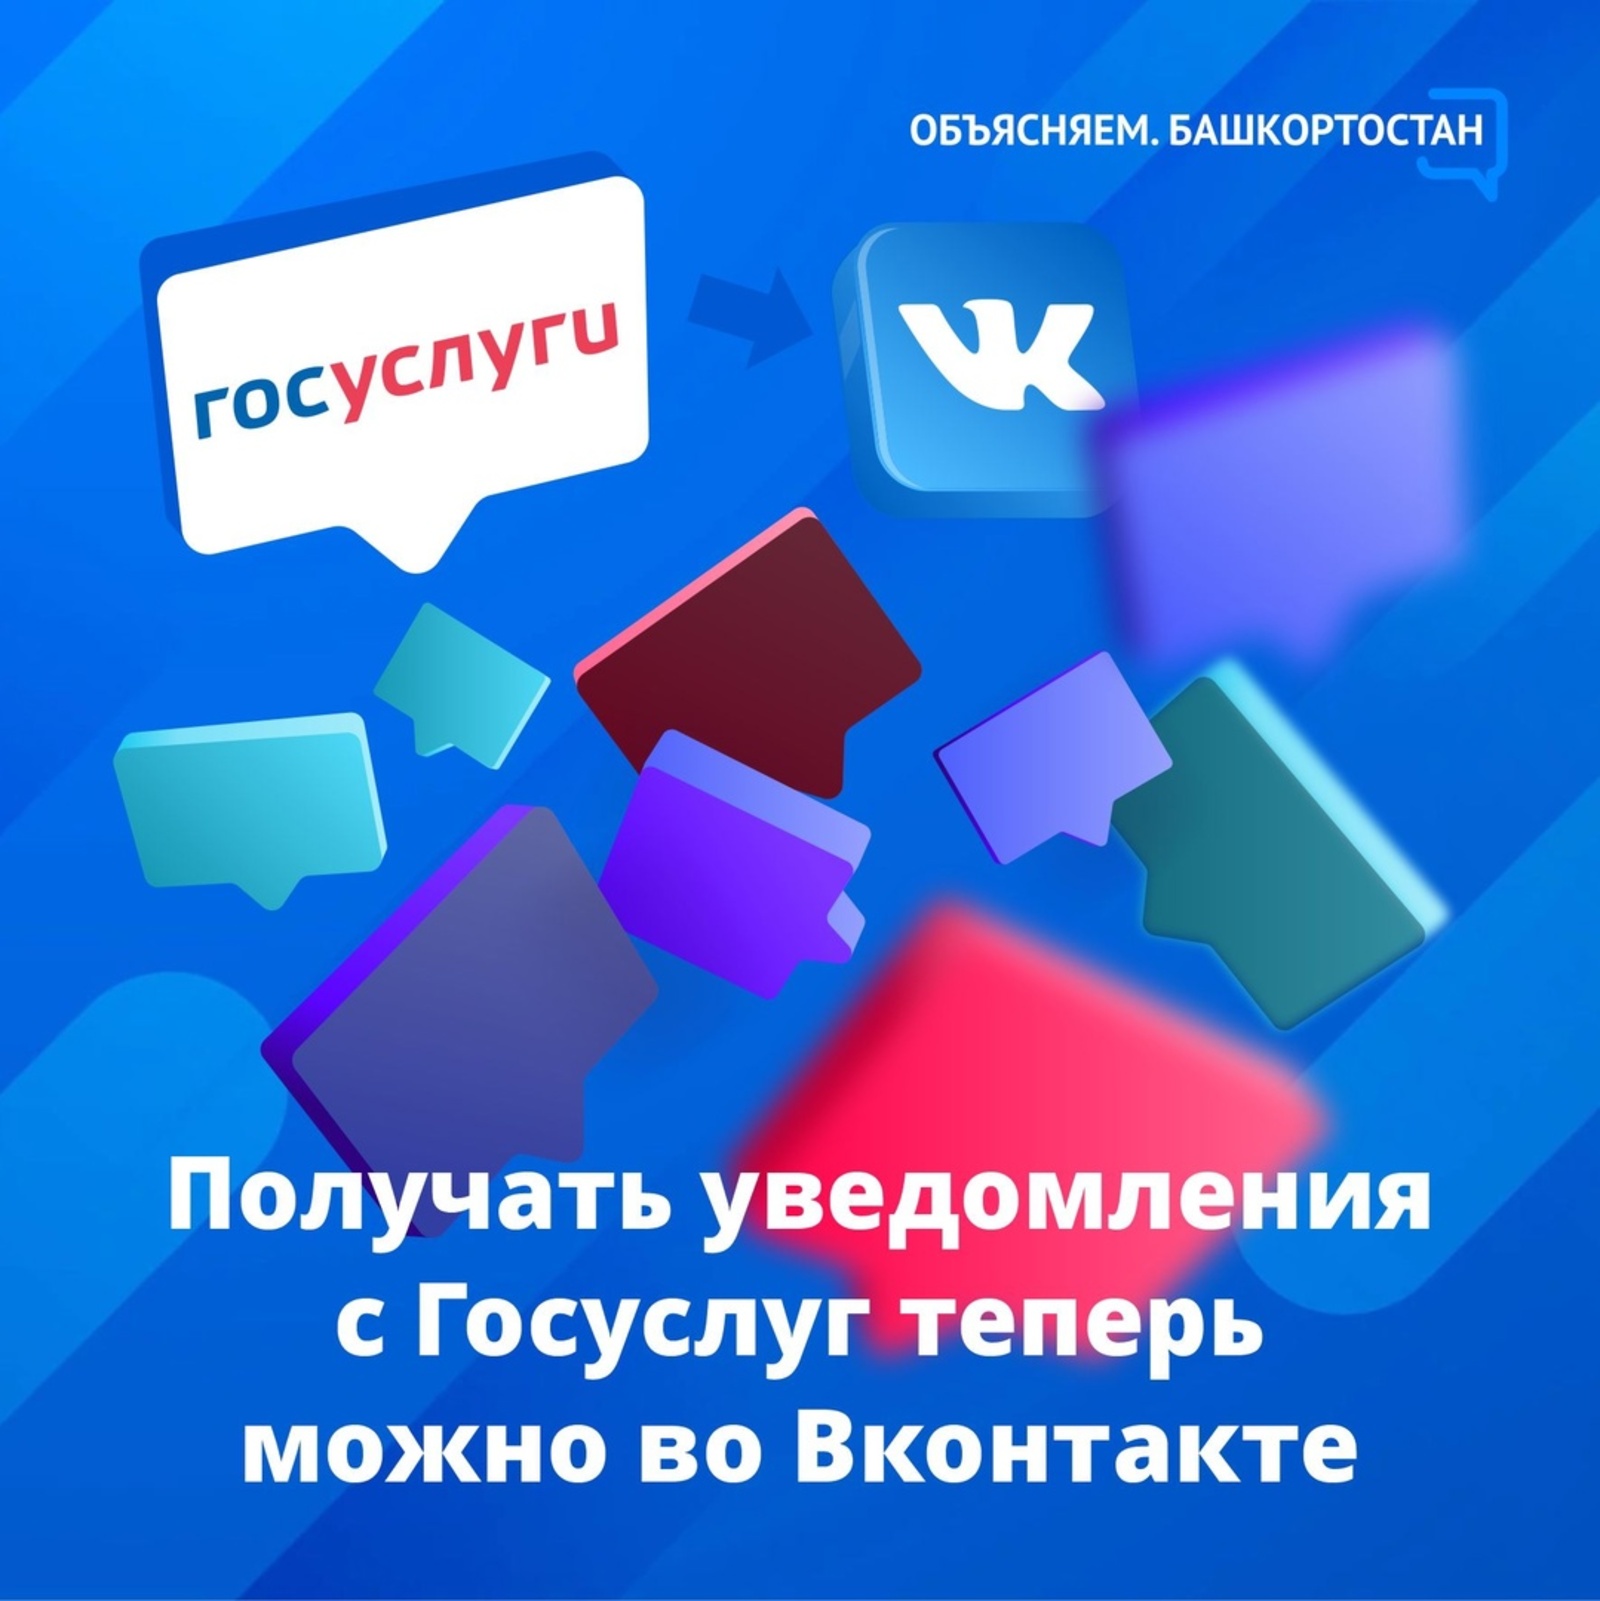 Уведомления Госуслуг о назначенных выплатах и пенсиях, а также оплата штрафов ГИБДД – теперь доступны ВКонтакте